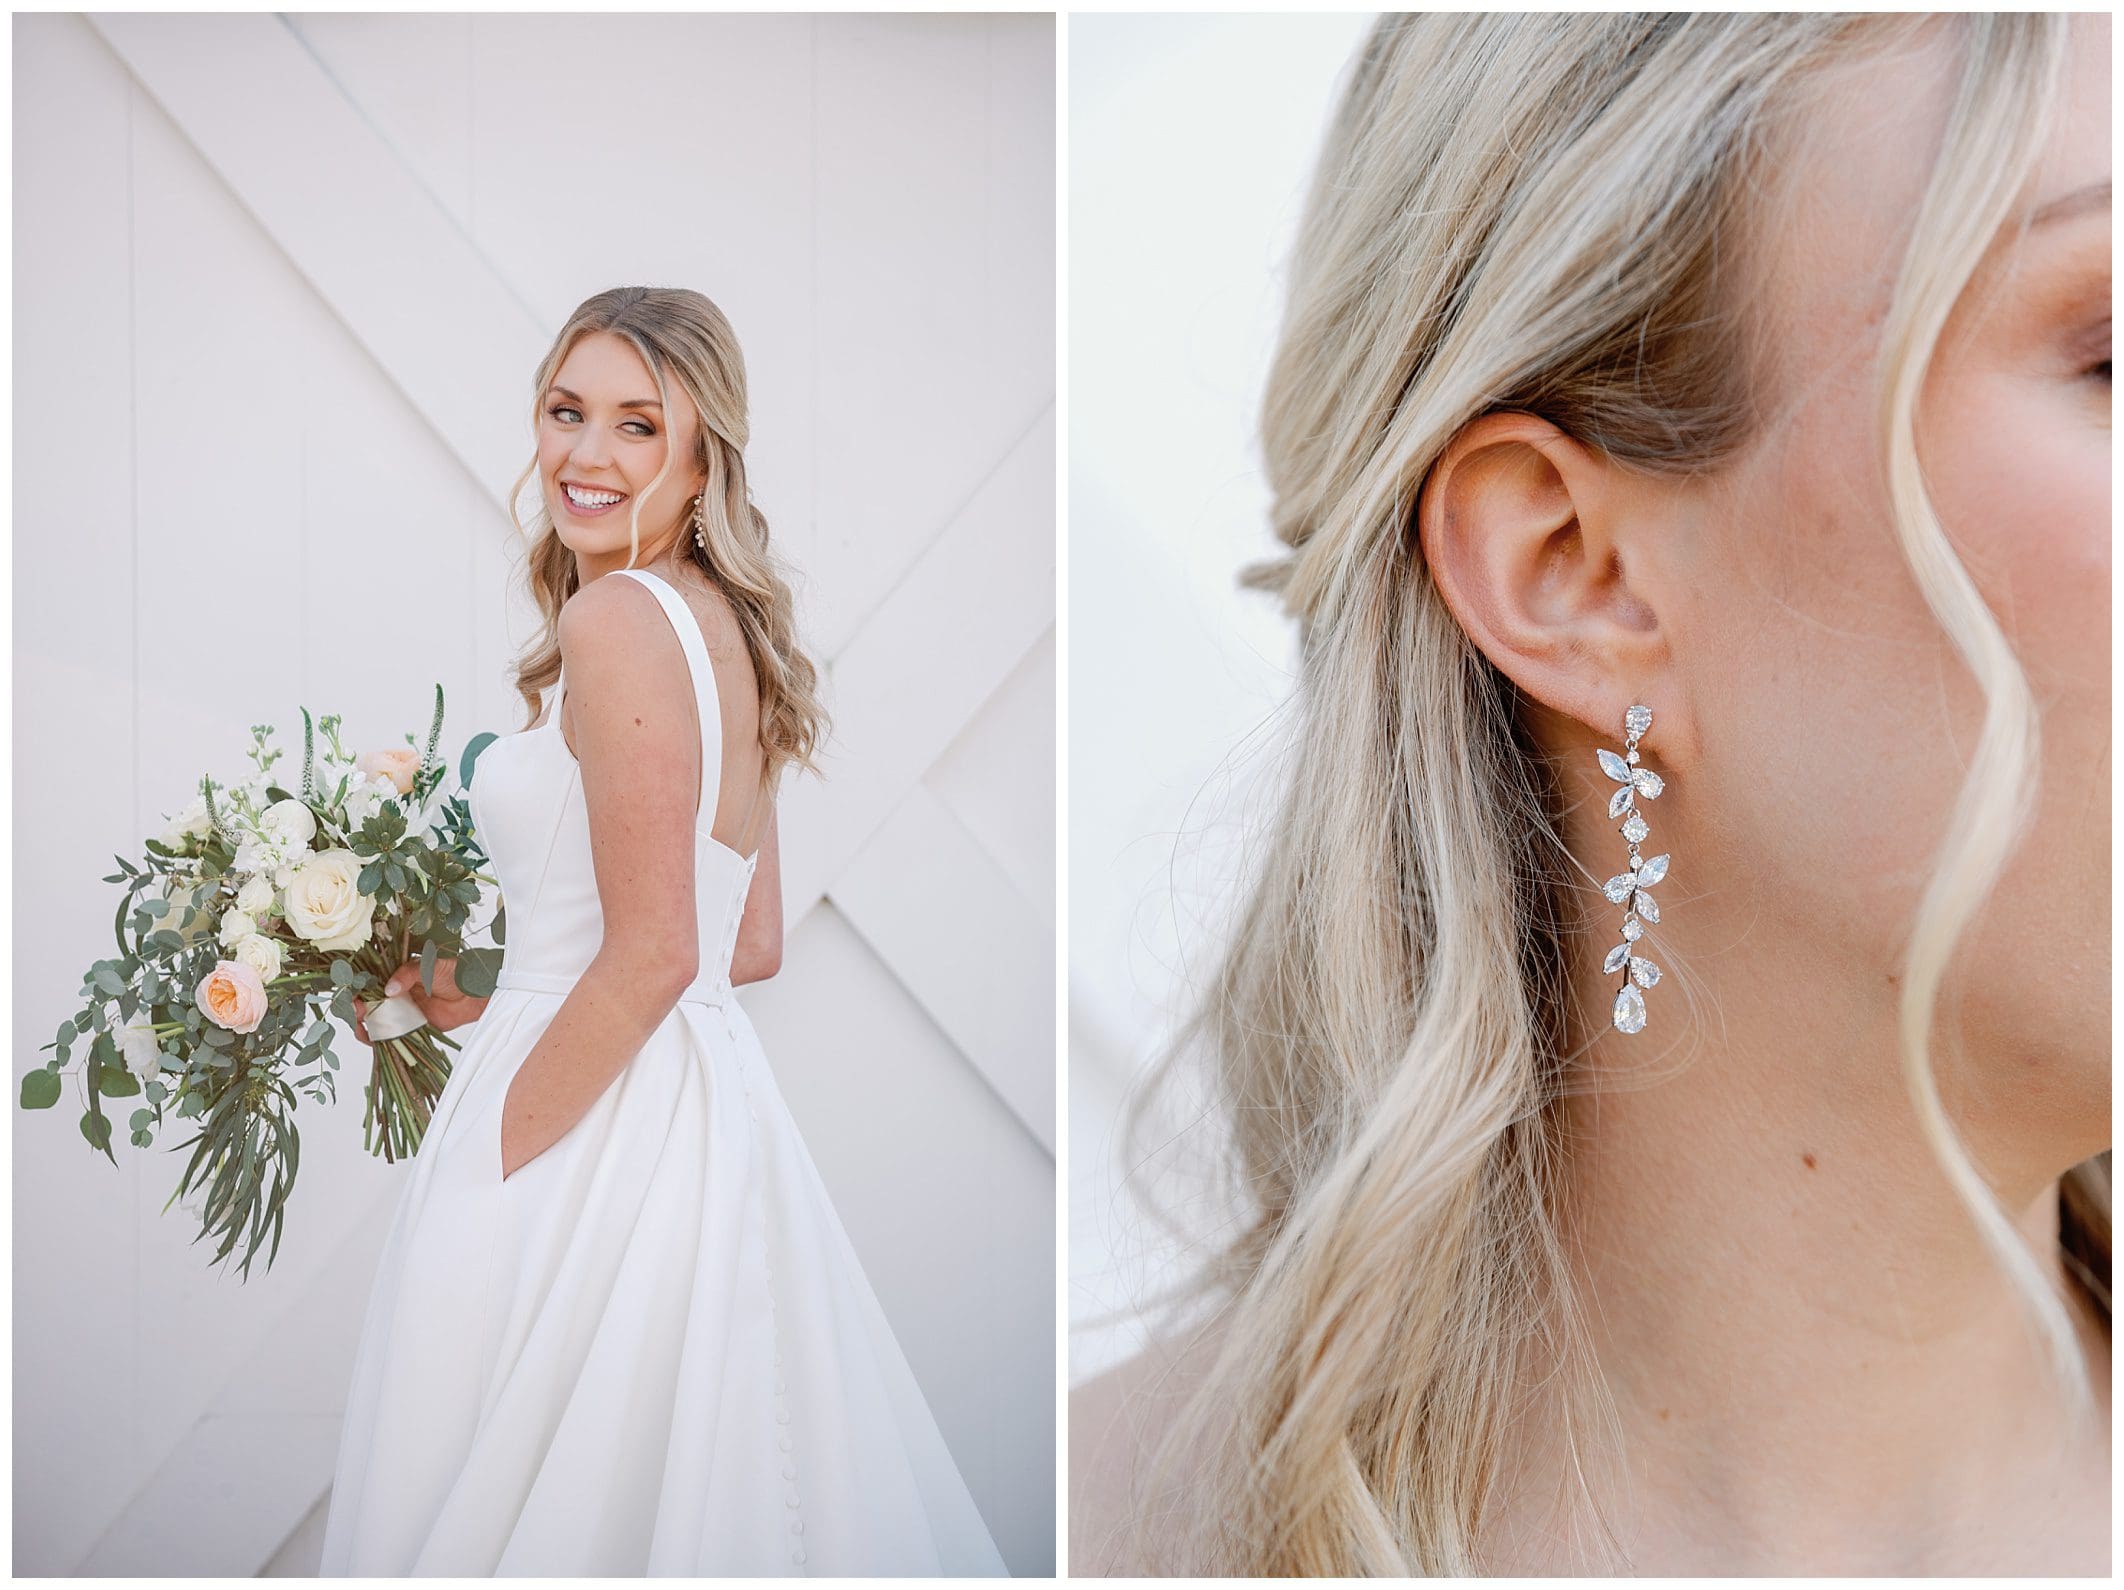 A bride in a white wedding dress wearing earrings.